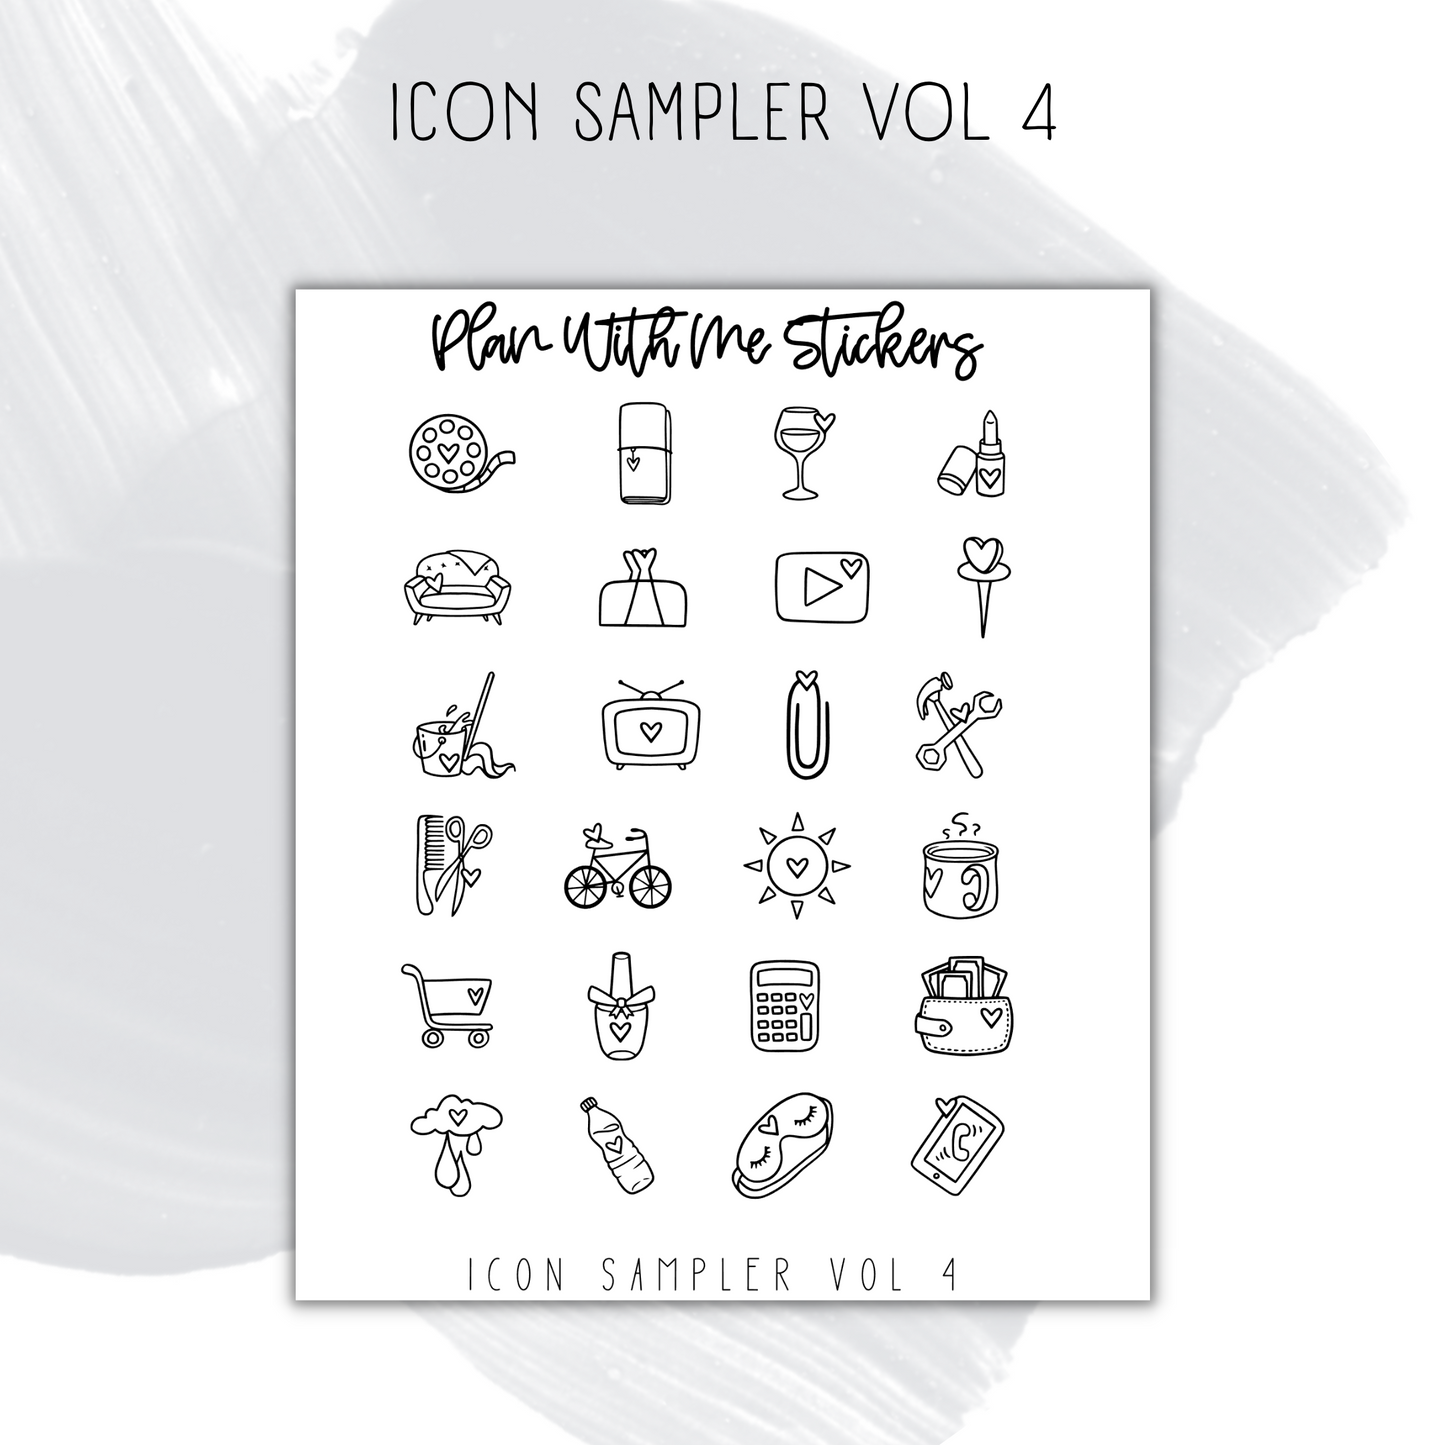 Icon Sampler Vol 4